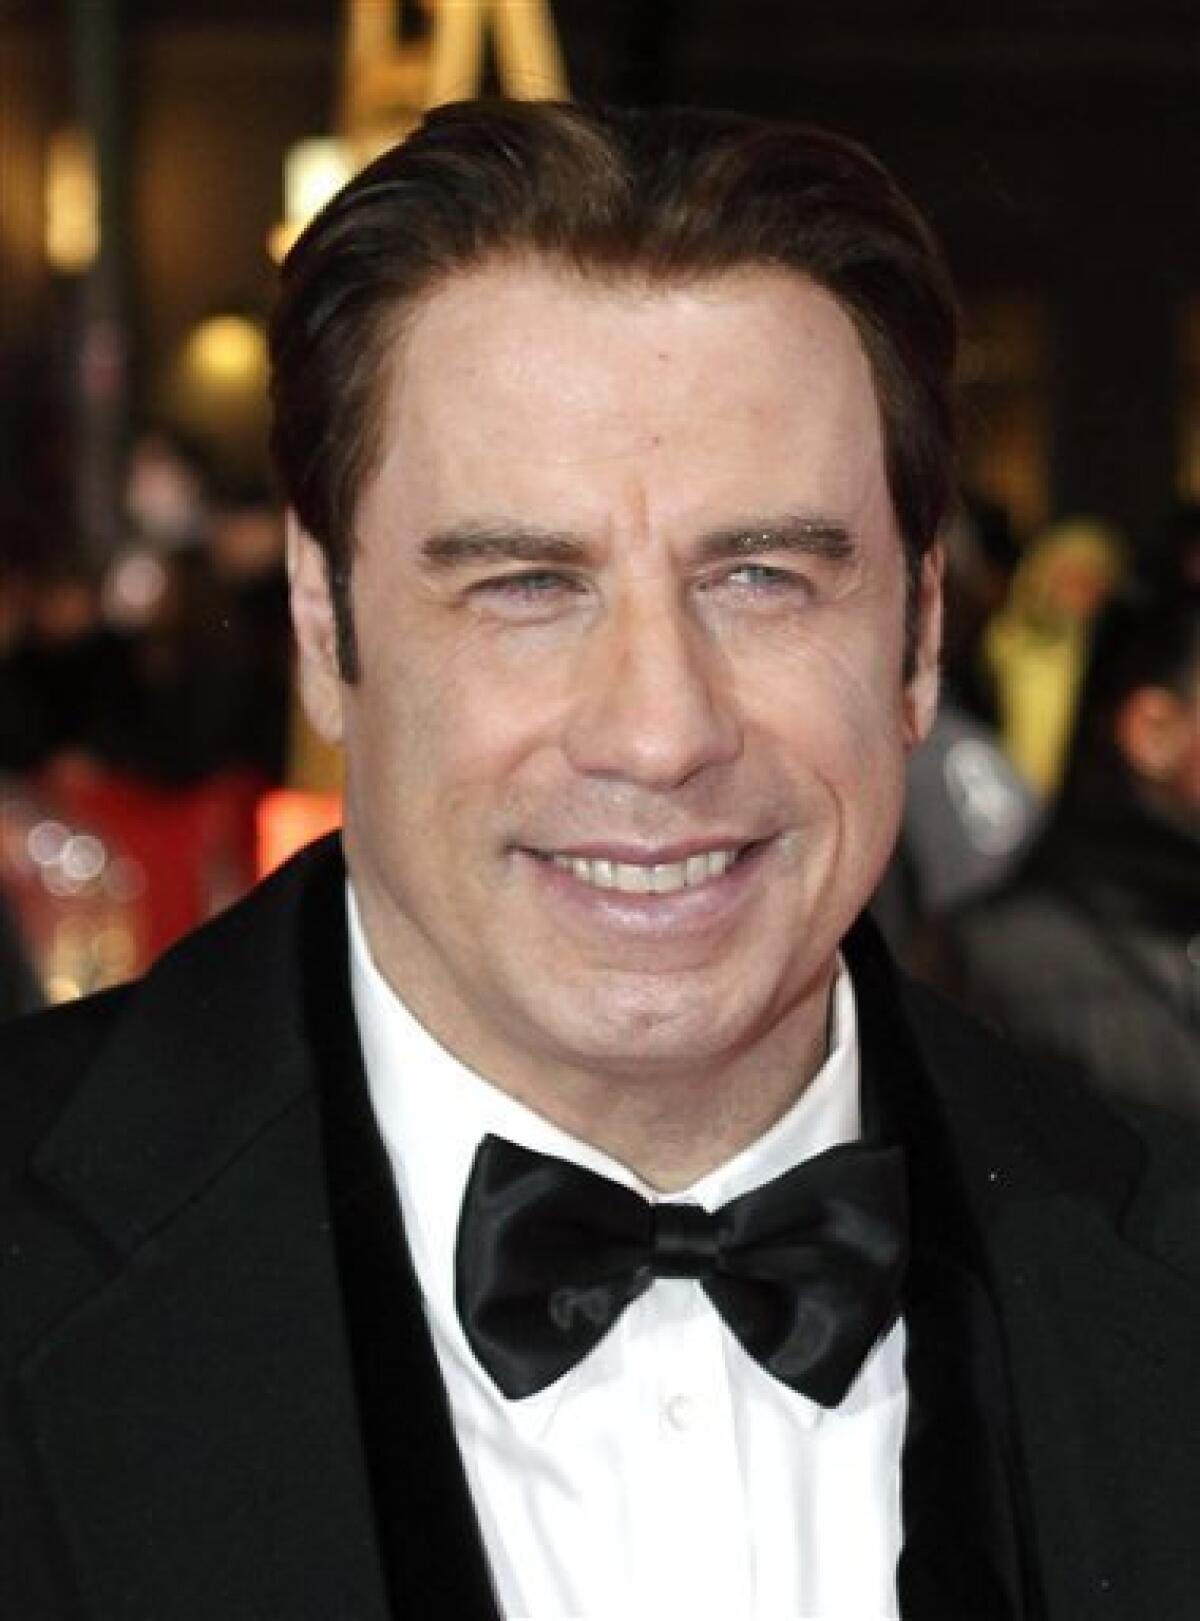 John Gotti Jr. and John Travolta 'Gotti: Three Generations' press